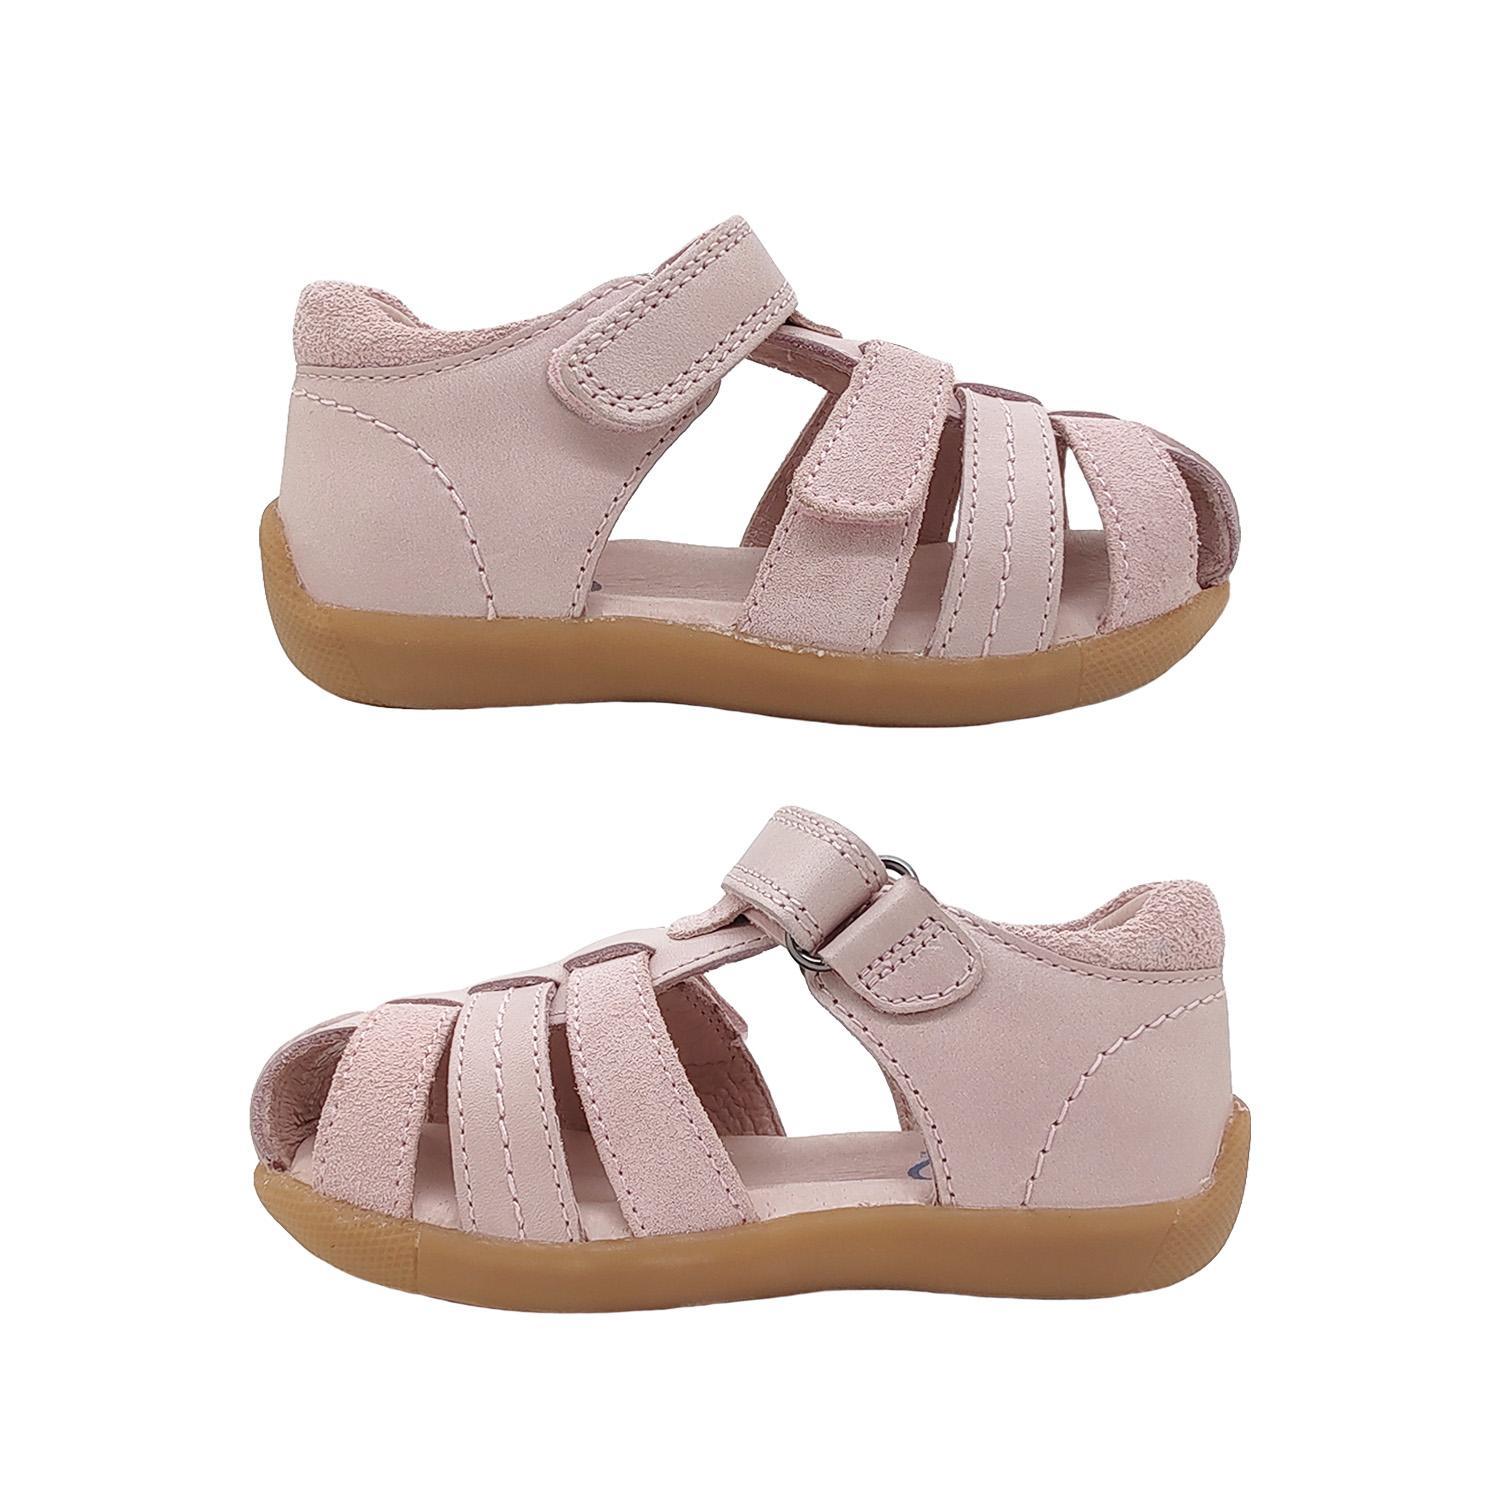 Surefit Alex Little Girls Sandals Leather Upper Toddler Back in Toe Cover Adjust-Pink-21